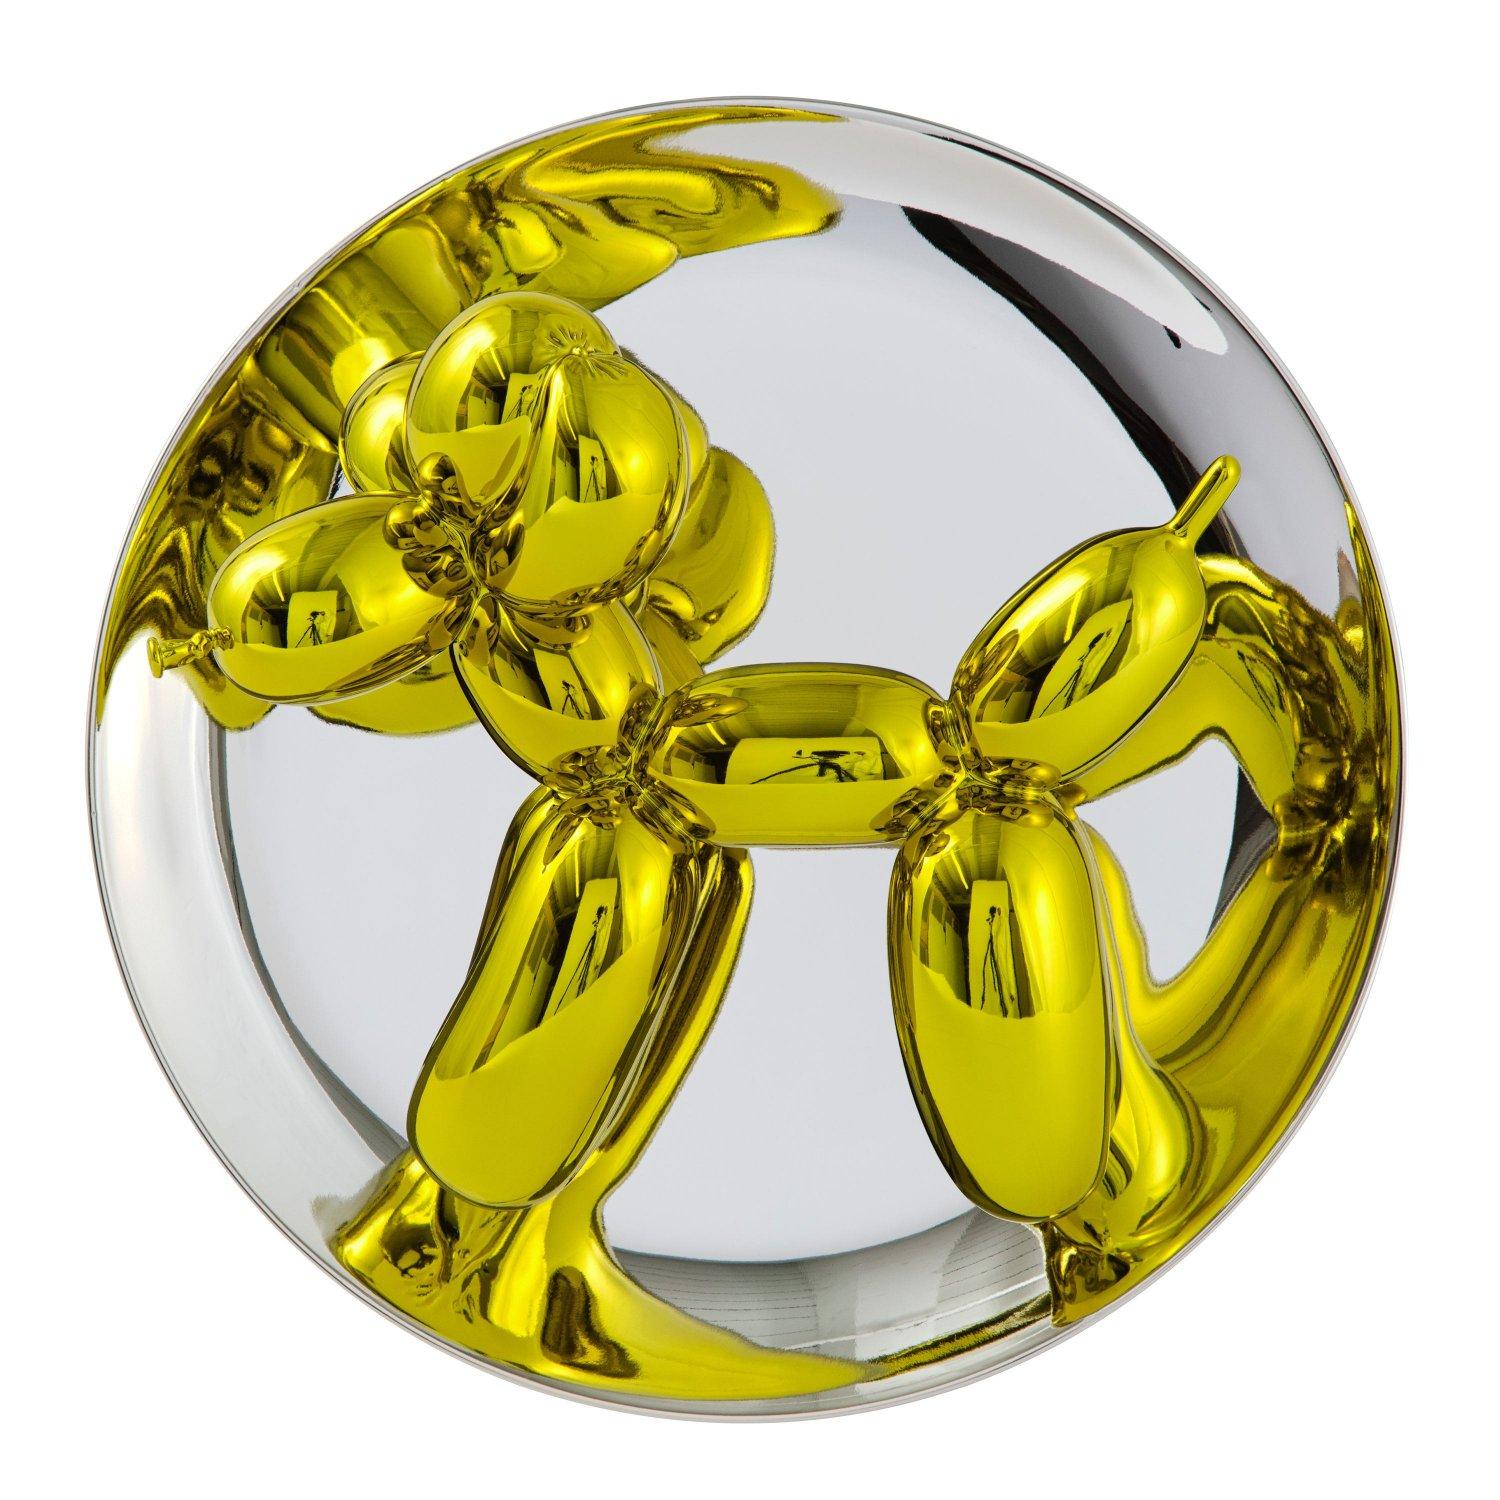 Balloon Dog (Yellow) - Jeff Koons, Zeitgenössisch, 21. Jahrhundert, Skulptur, Dekor, Limitierte Auflage

Limoges-Porzellan mit chromatischer, metallisierter Beschichtung
Auflage von 2300 Stück
Signiert und nummeriert
In neuwertigem Zustand, wie vom